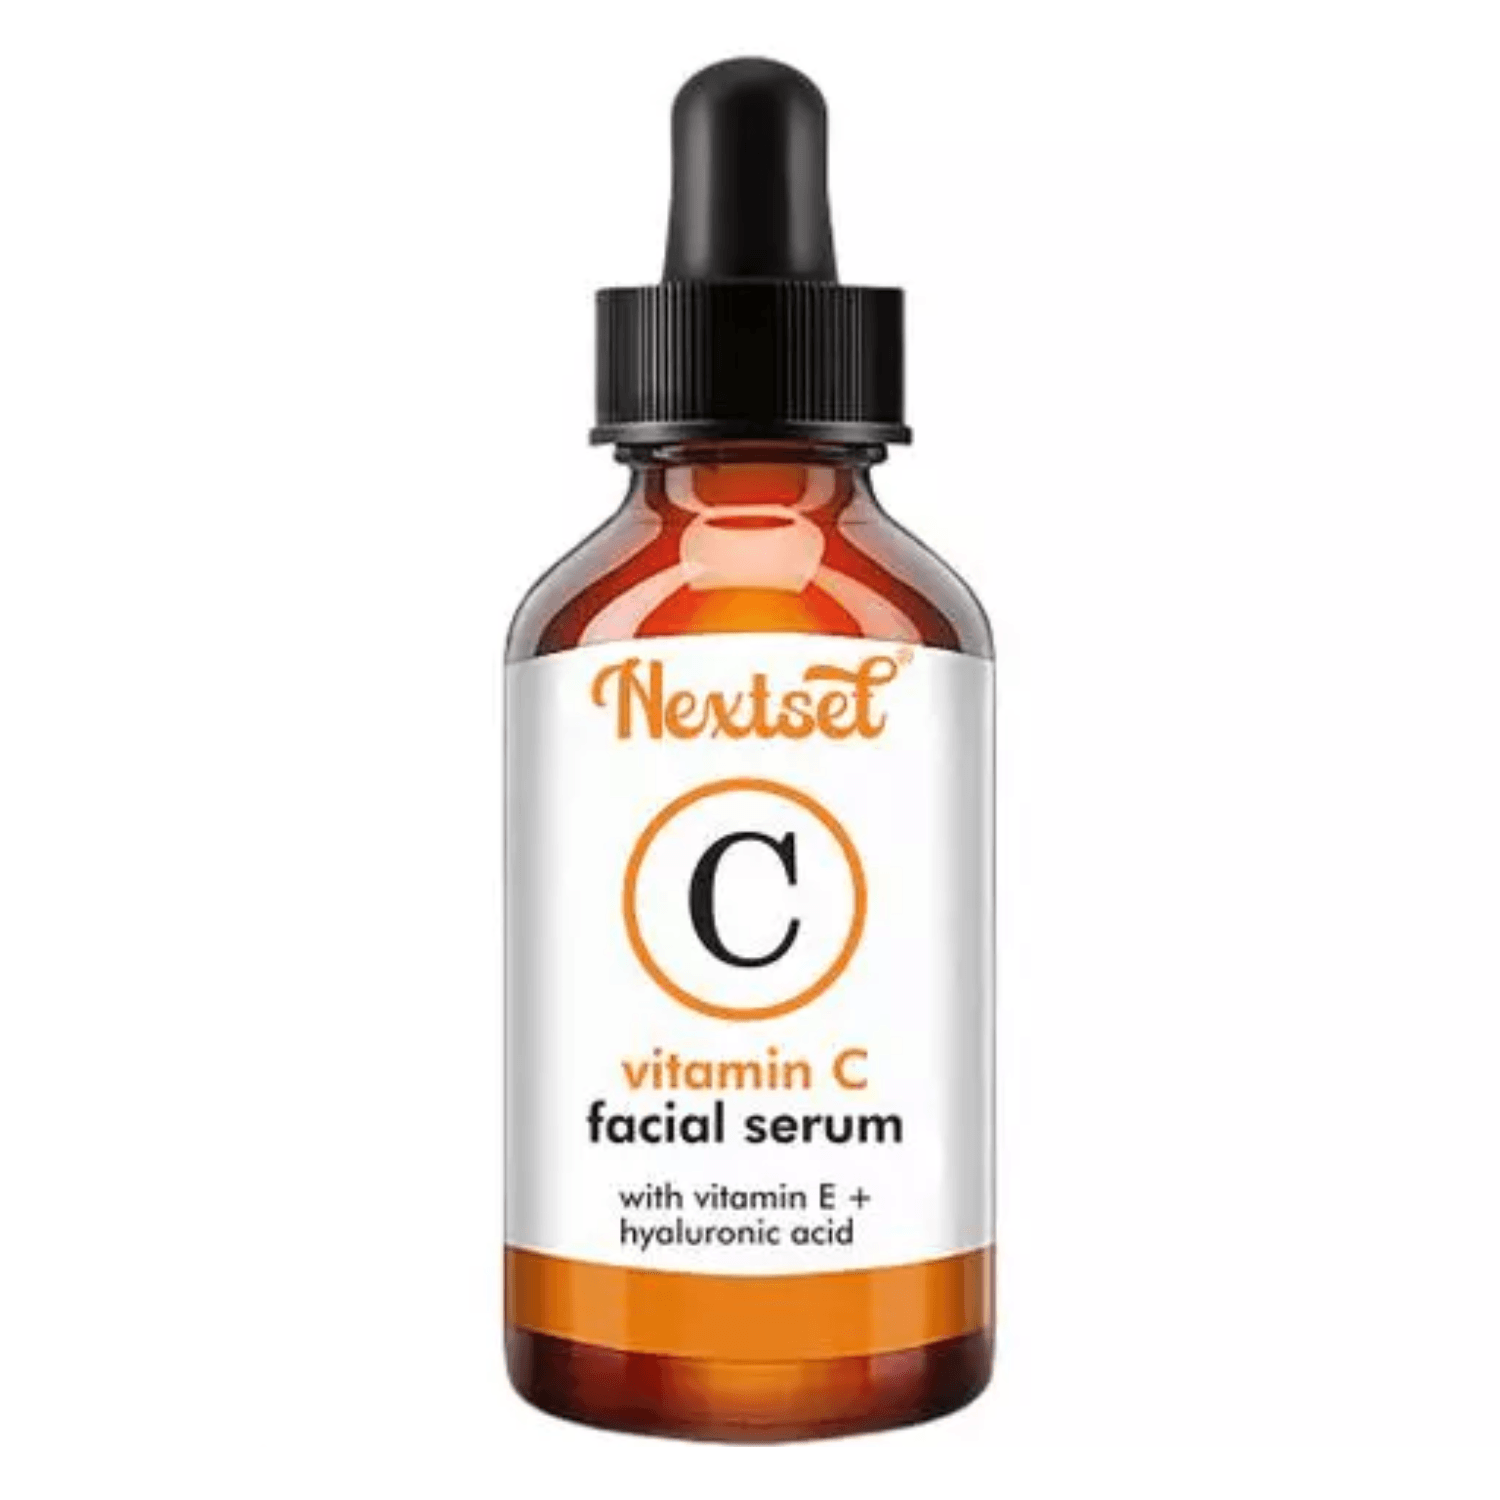 Nextset Face Serum Vitamin-C